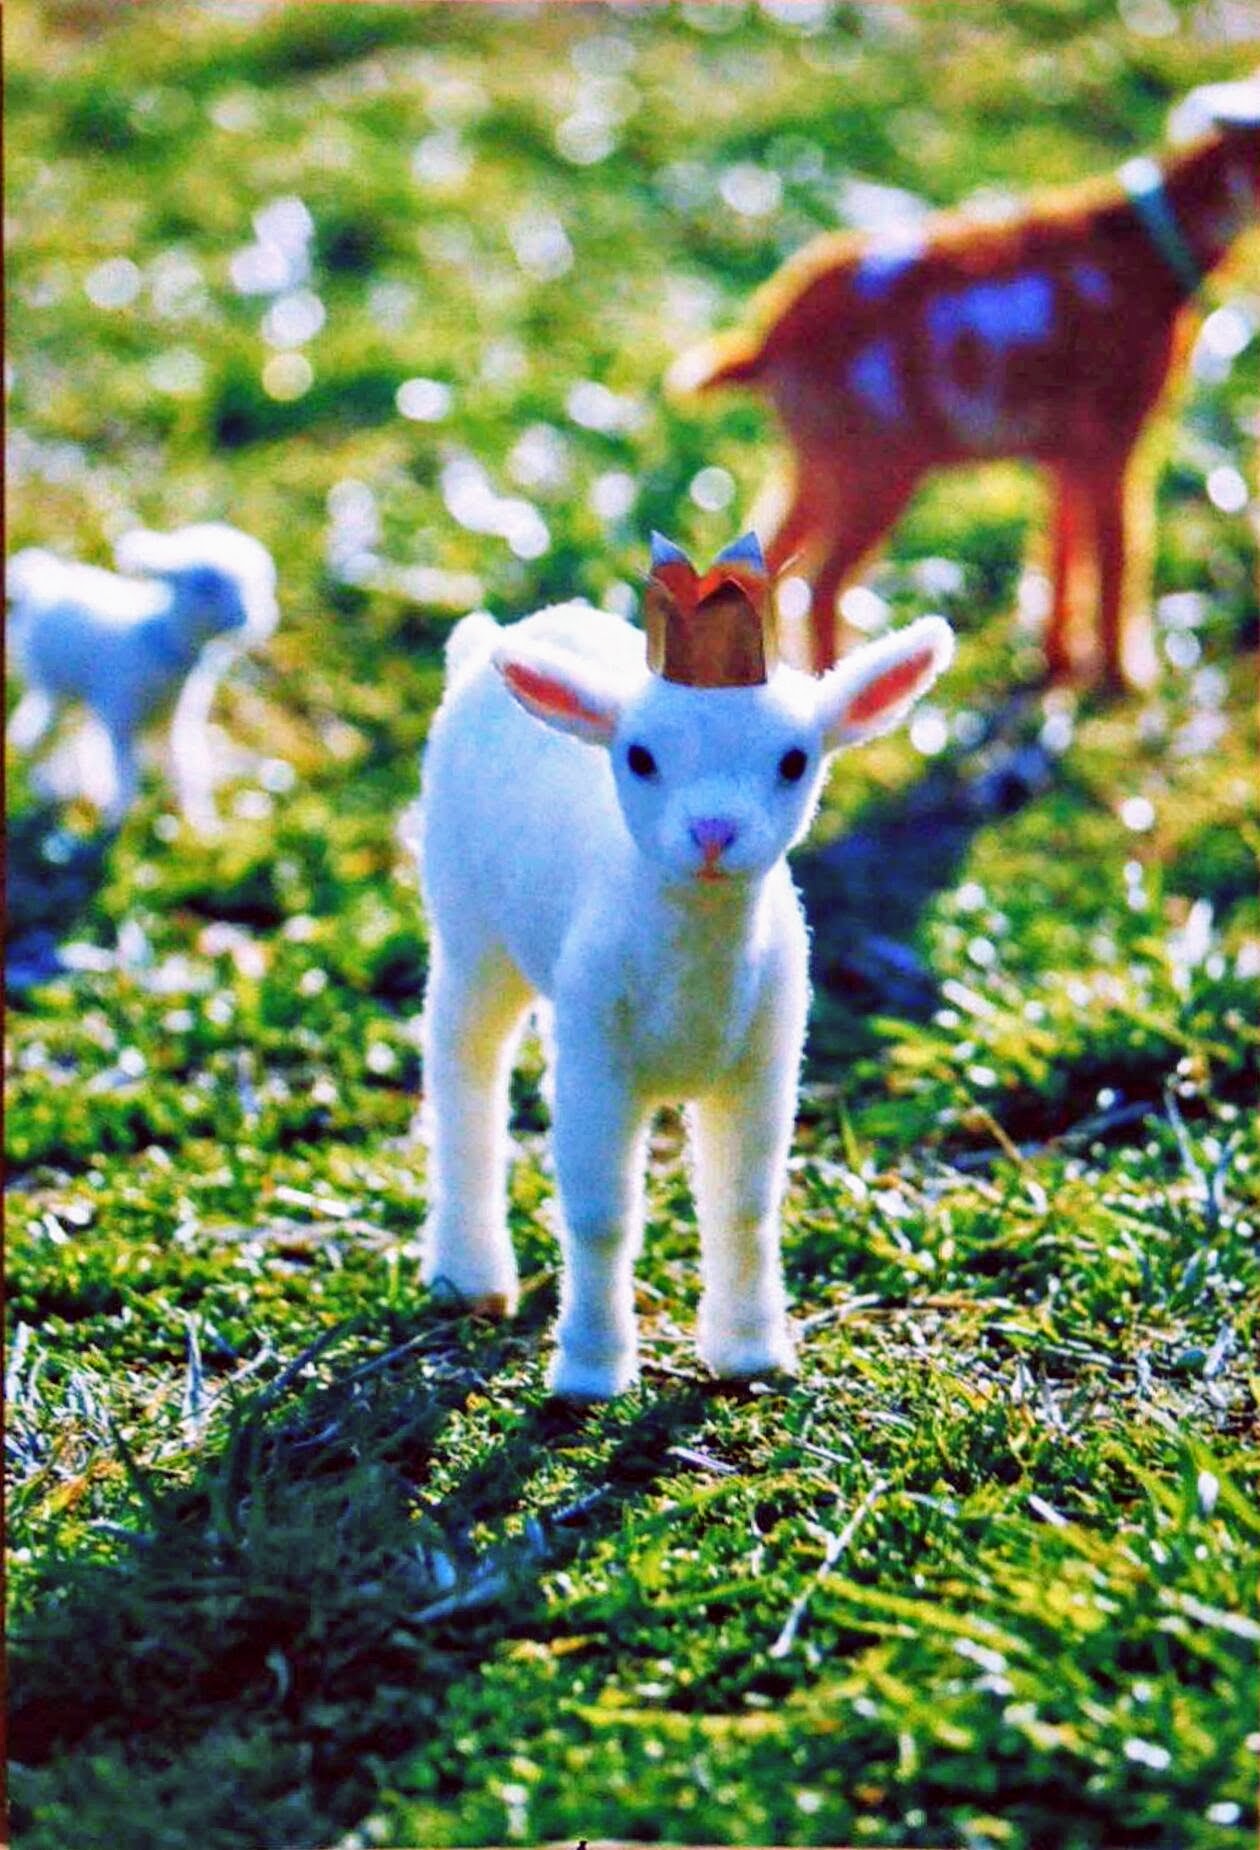 羊毛フェルトで出来たリアルでかわいい動物たちに癒される♪愛知川びんてまりの館にて「YOSHiNOBU 羊毛フェルトの動物たち」が開催中です！